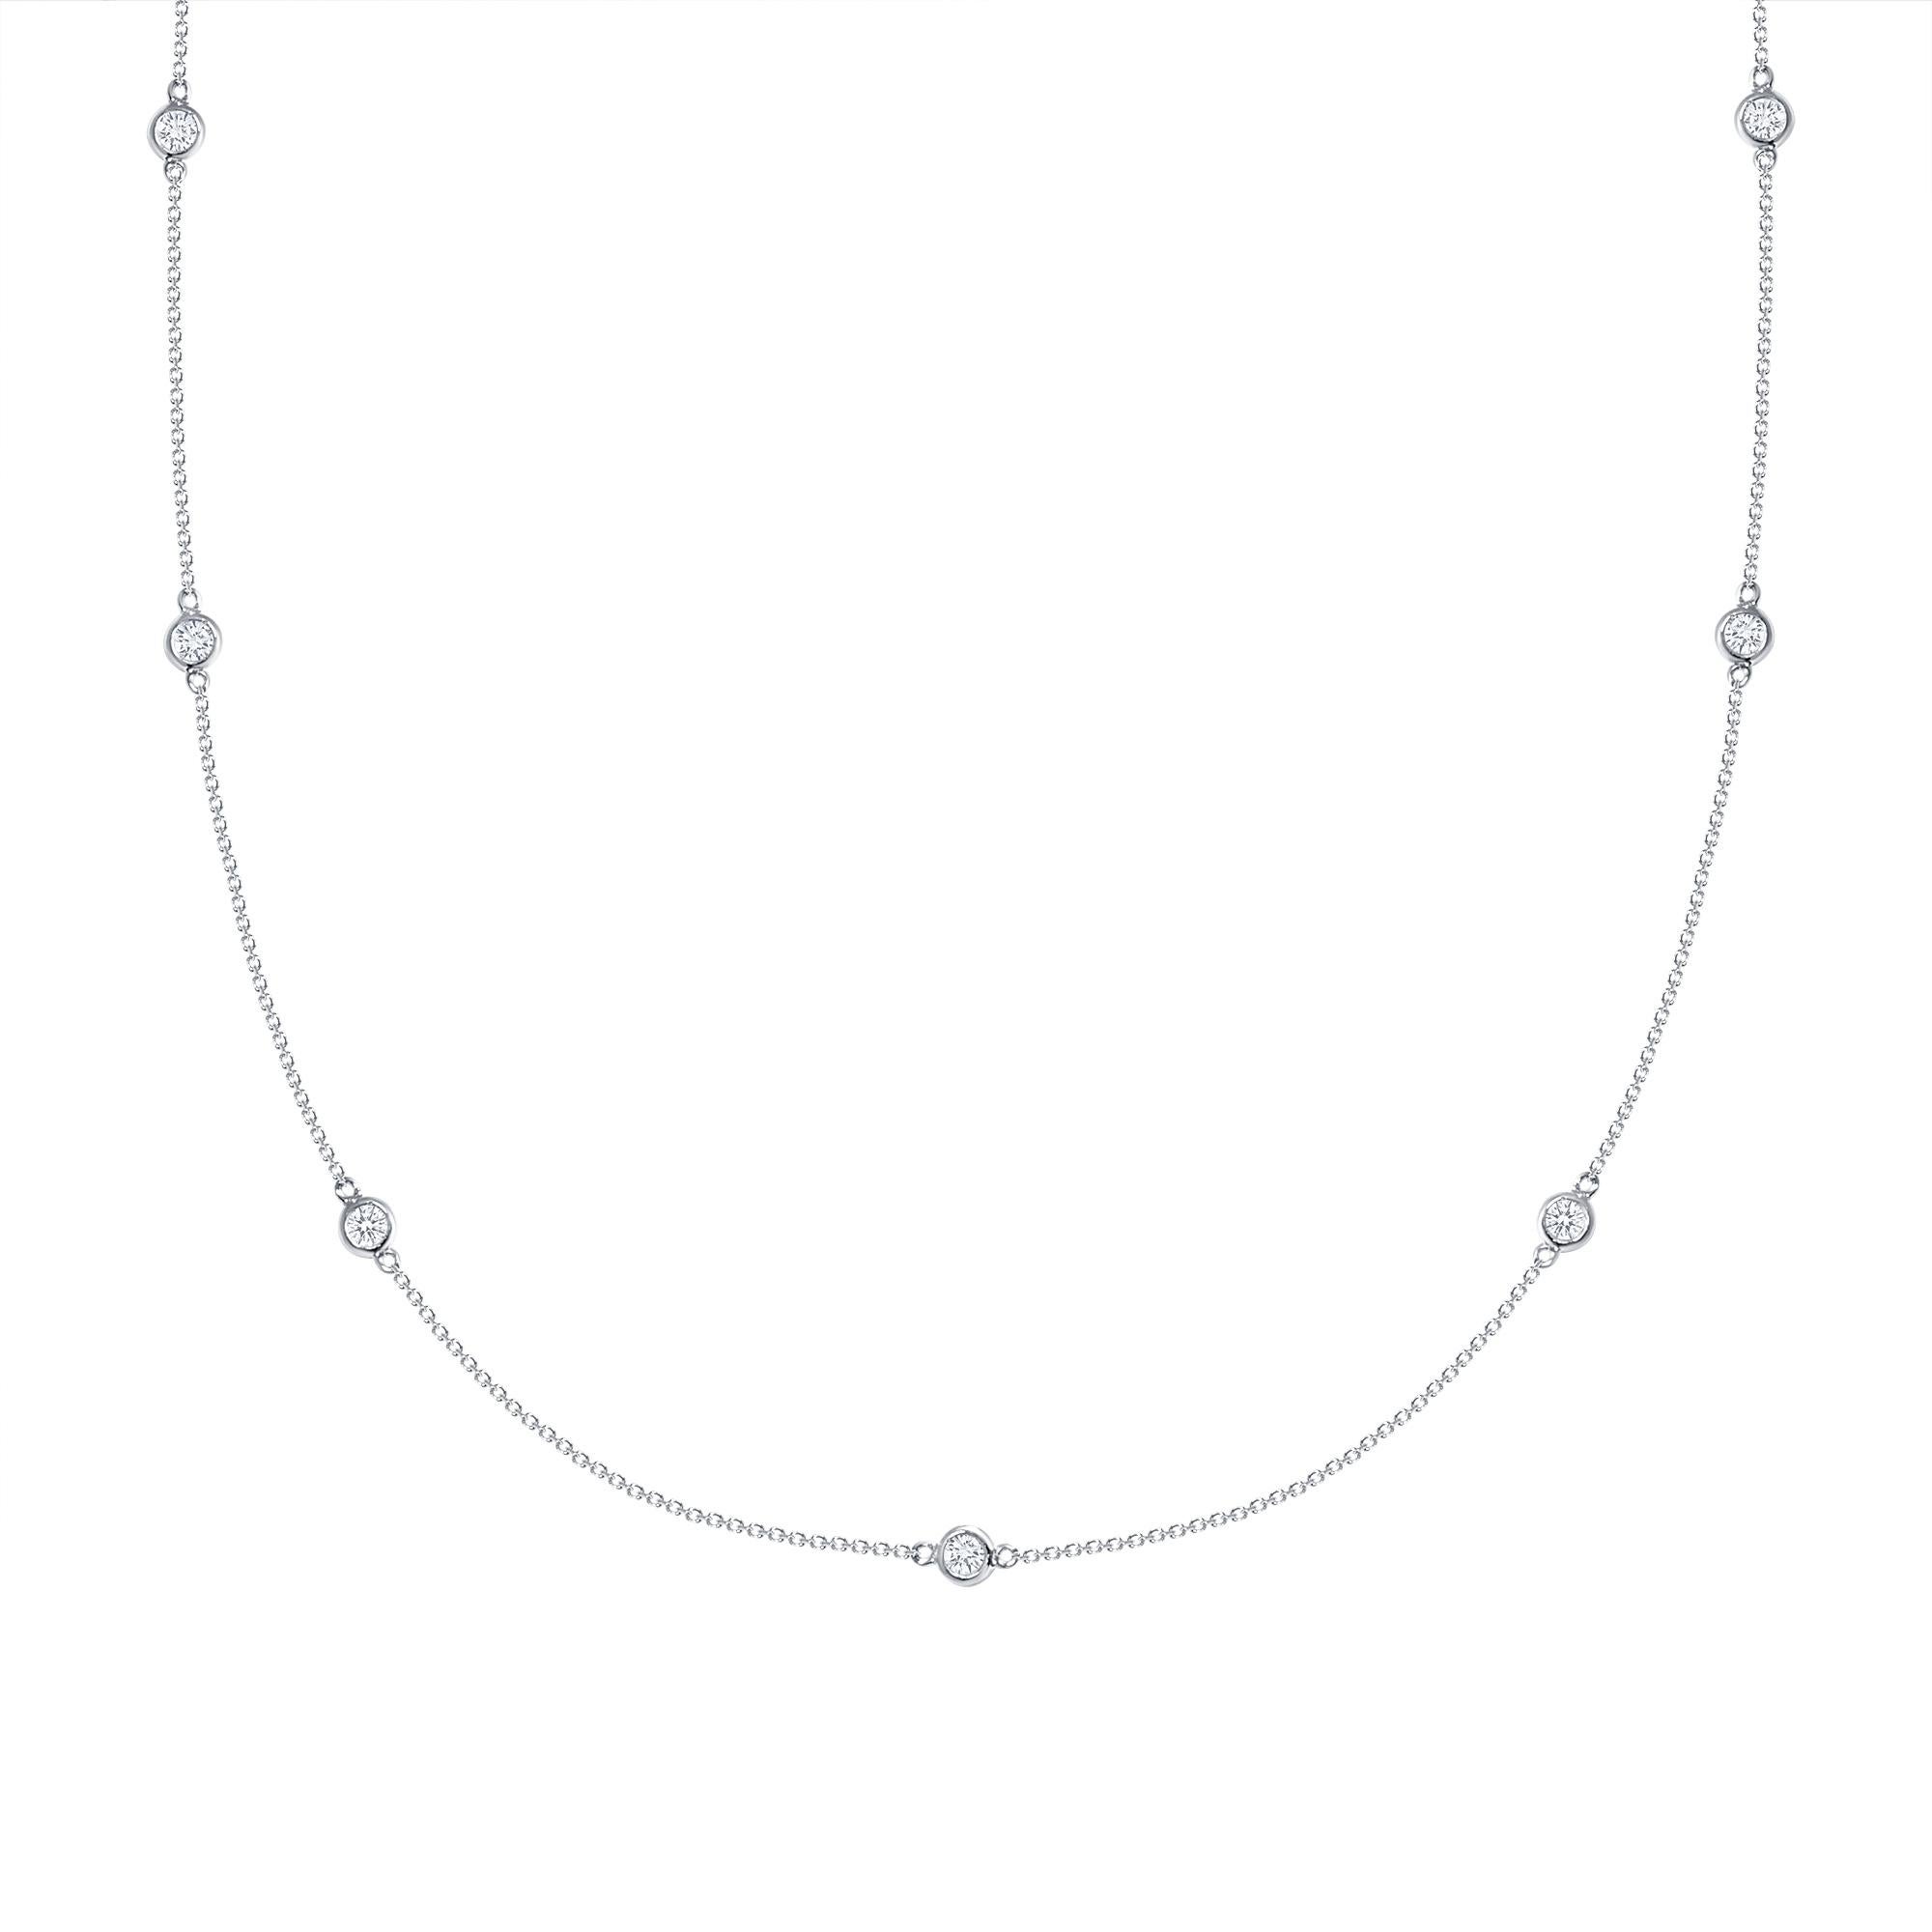 1.5 carat diamond necklace